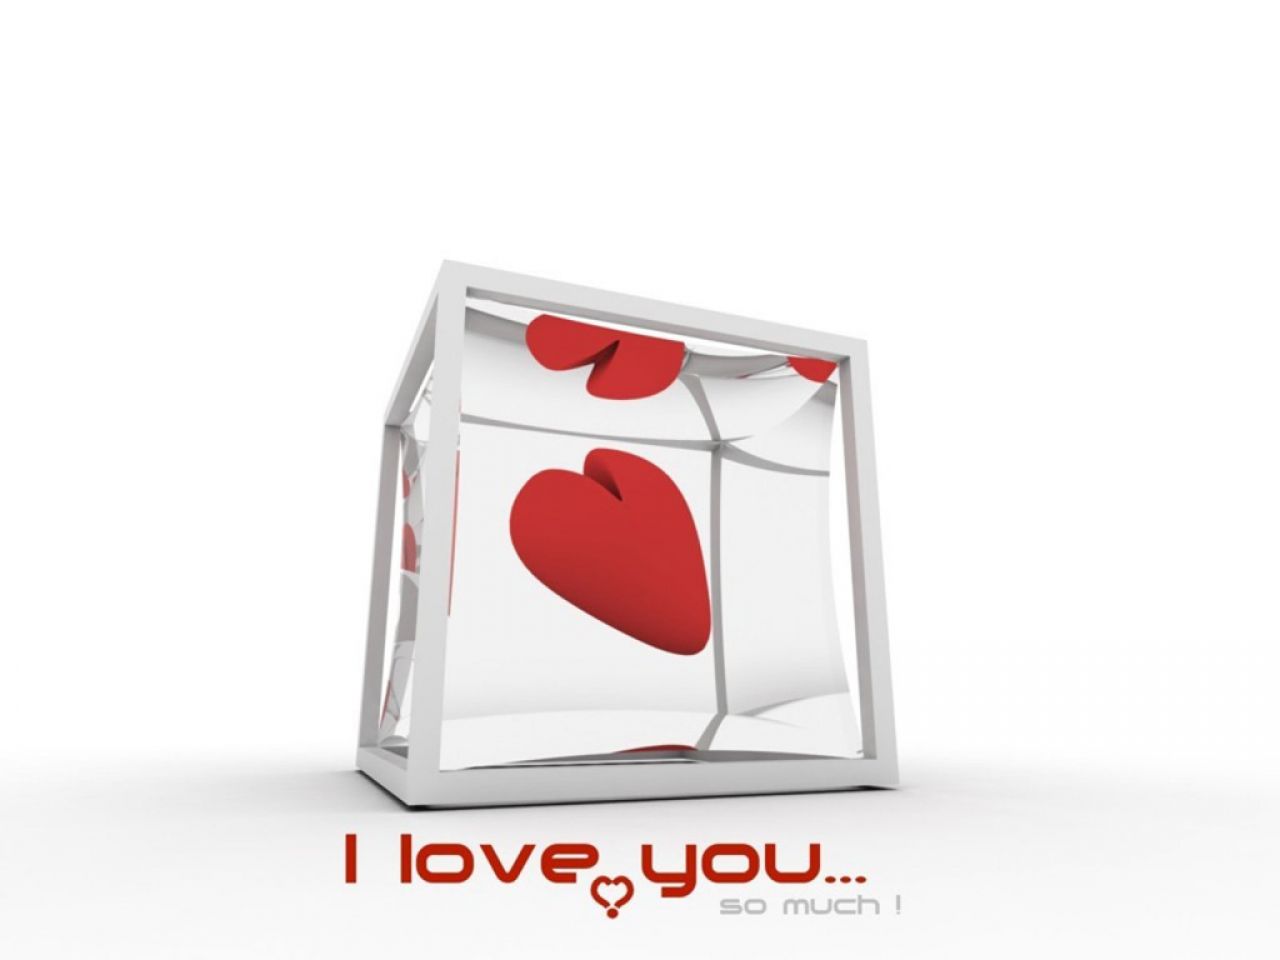 Fond d'ecran I love you so much cube